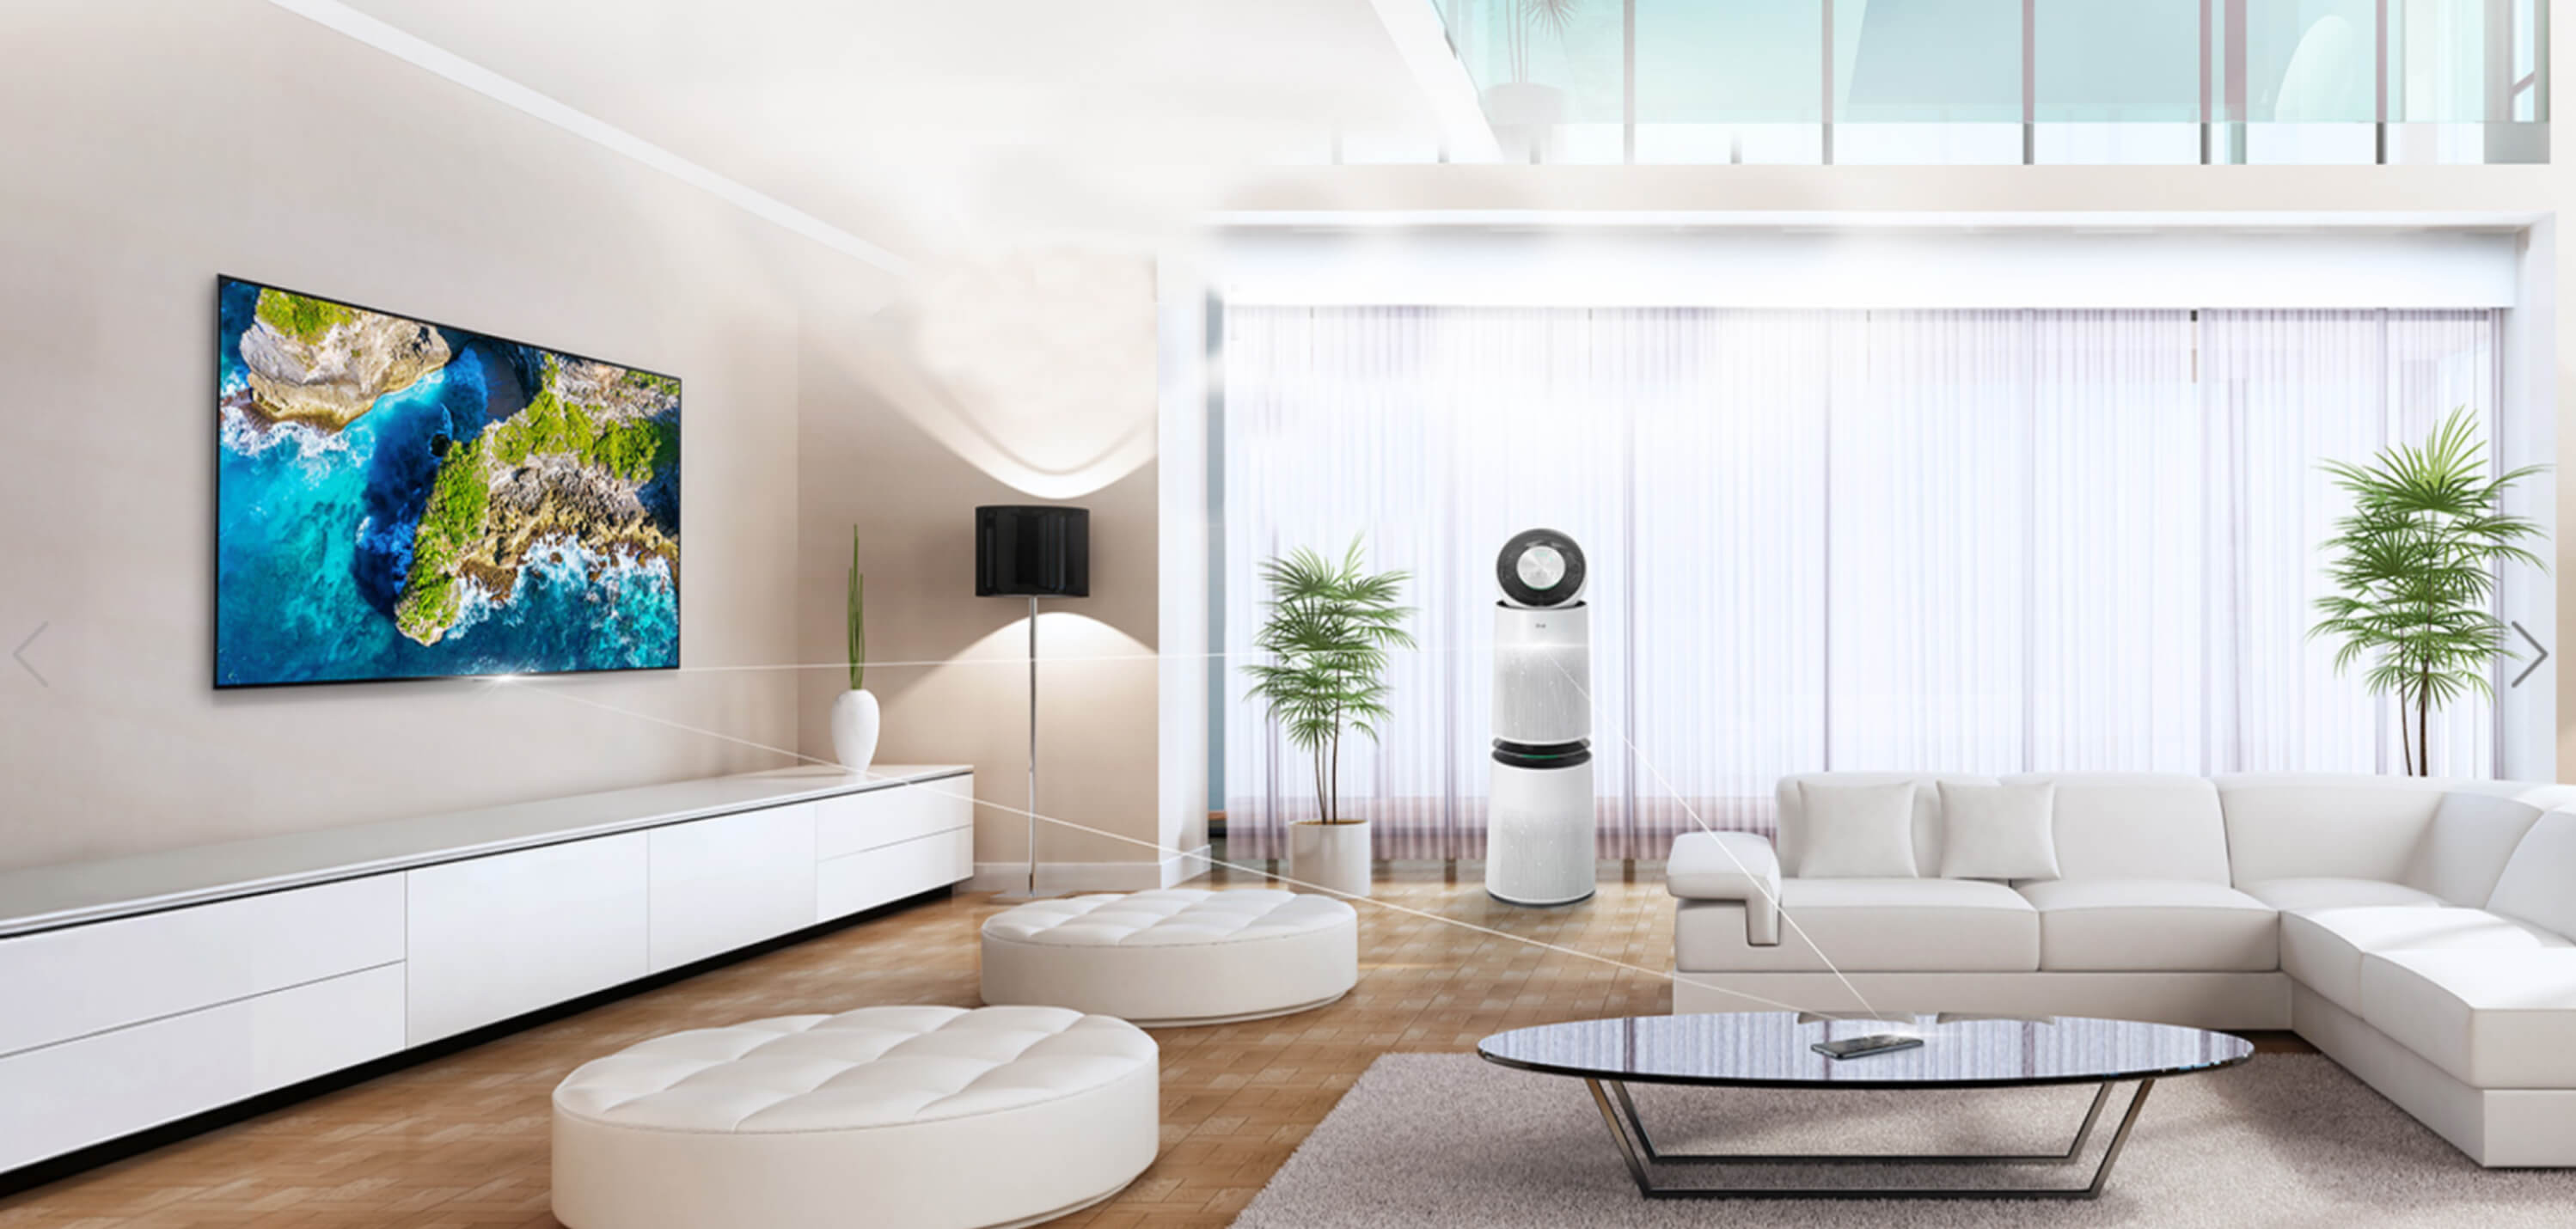 LG Comfort Living Room